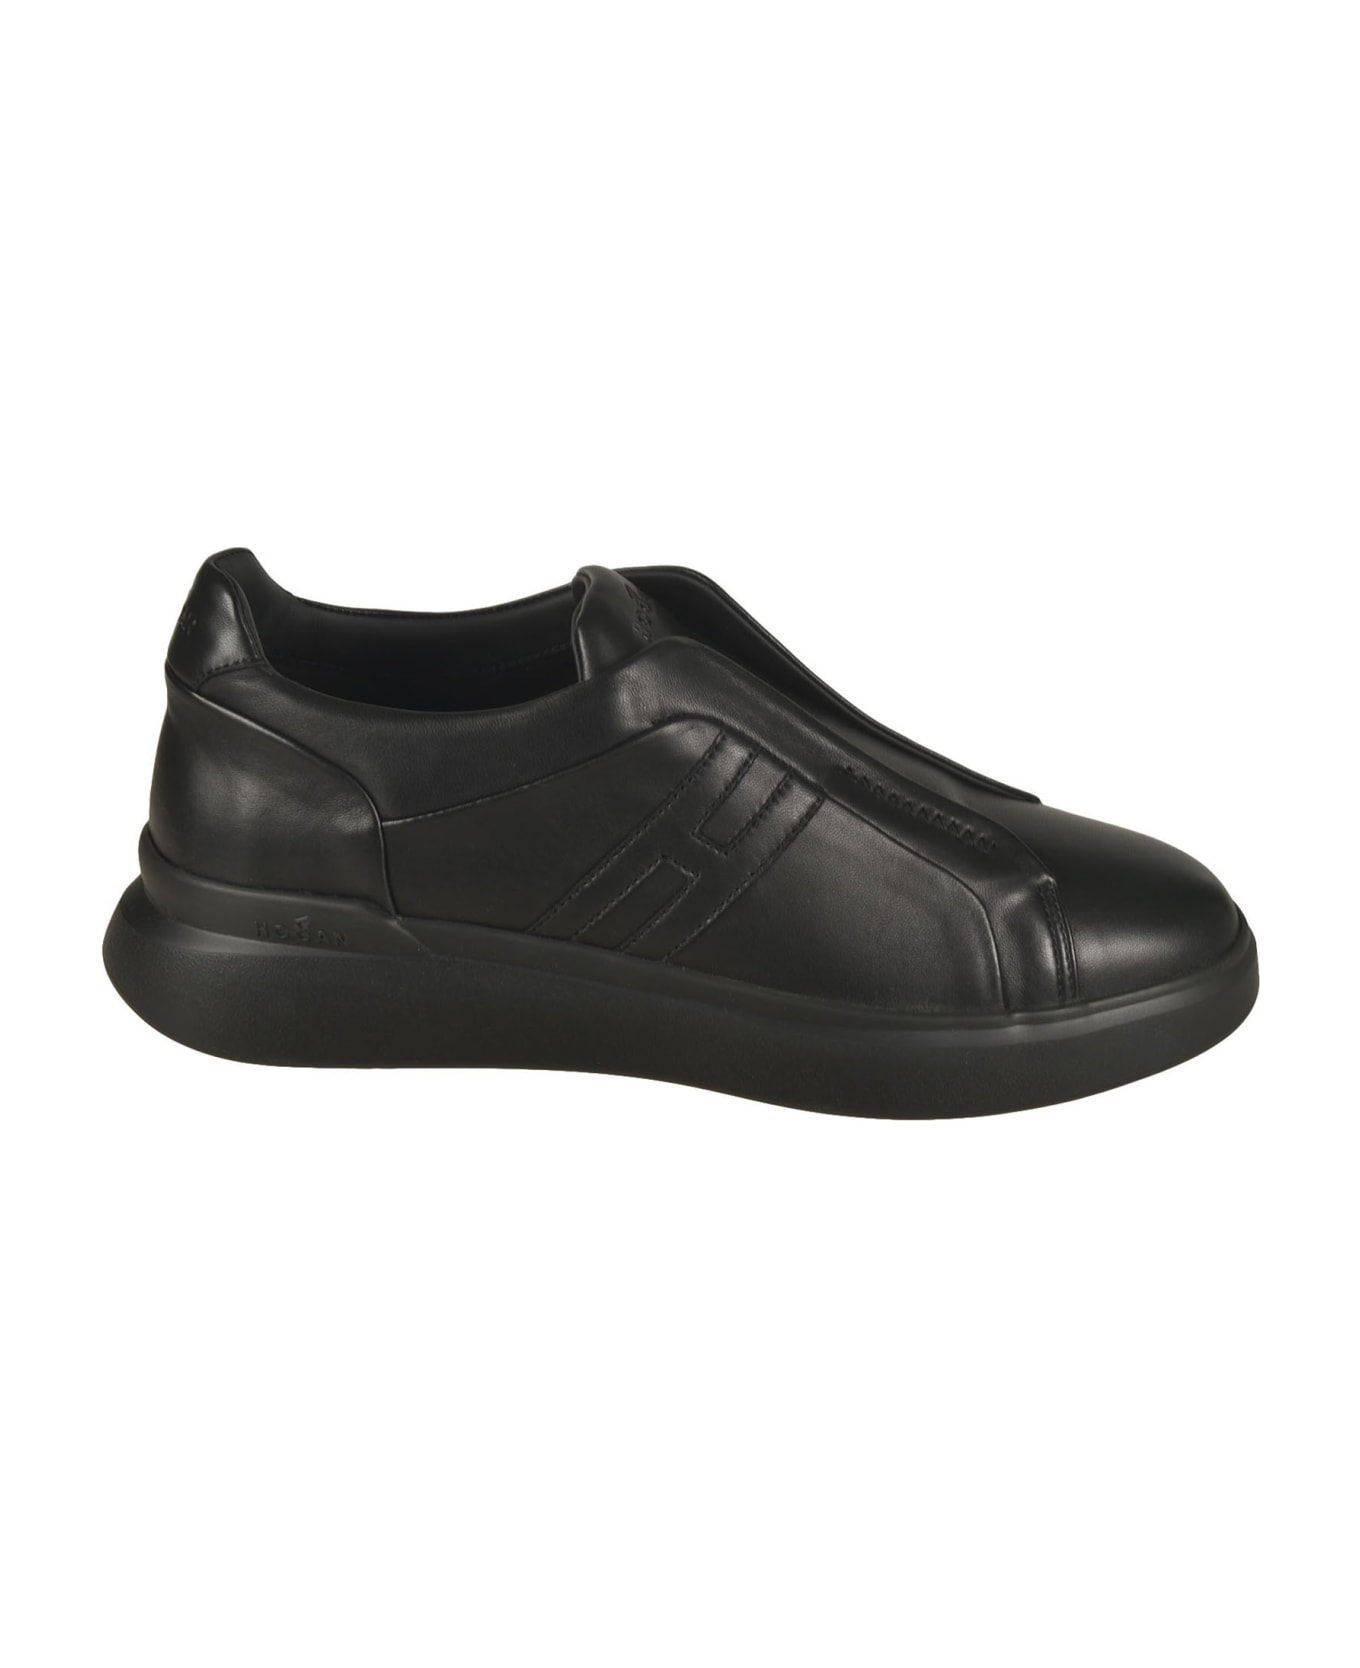 Hogan H580 Sneakers - 9999